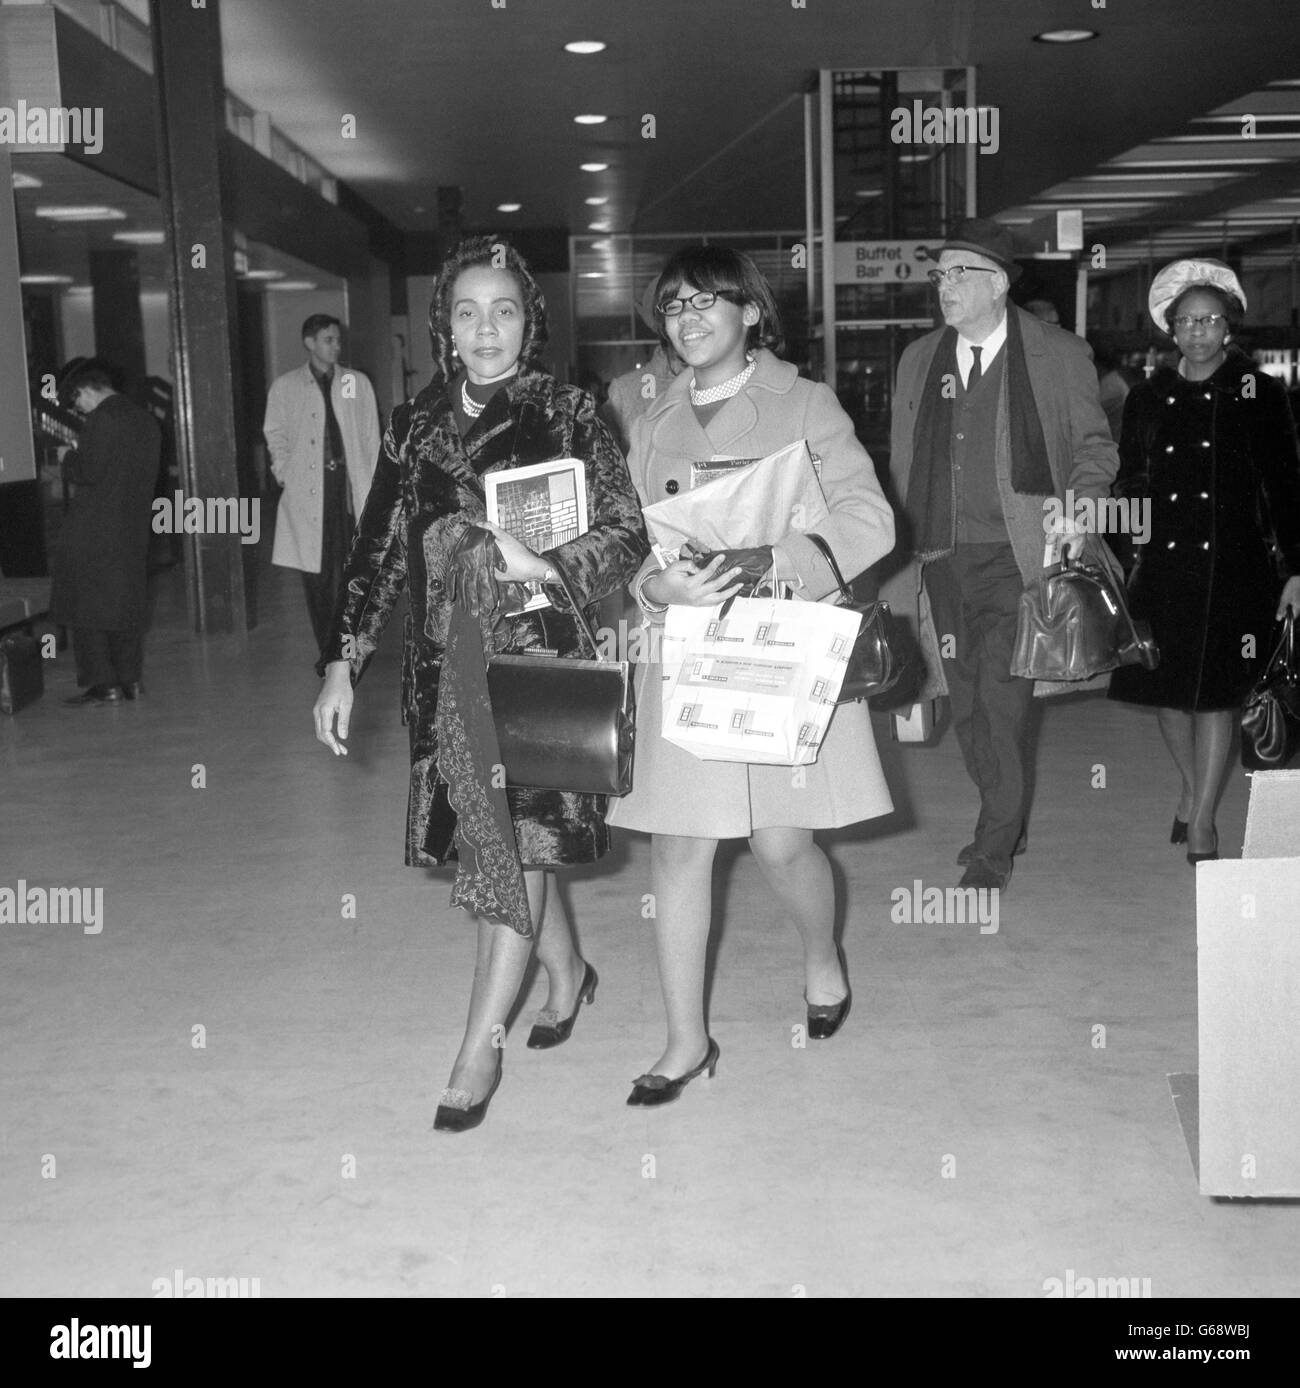 Coretta King, vedova del leader dei diritti civili assassinato Martin Luther King, con sua figlia Yolanda, 13 anni. Sono stati all'aeroporto di Heathrow dopo una visita di quattro giorni a Londra. Foto Stock